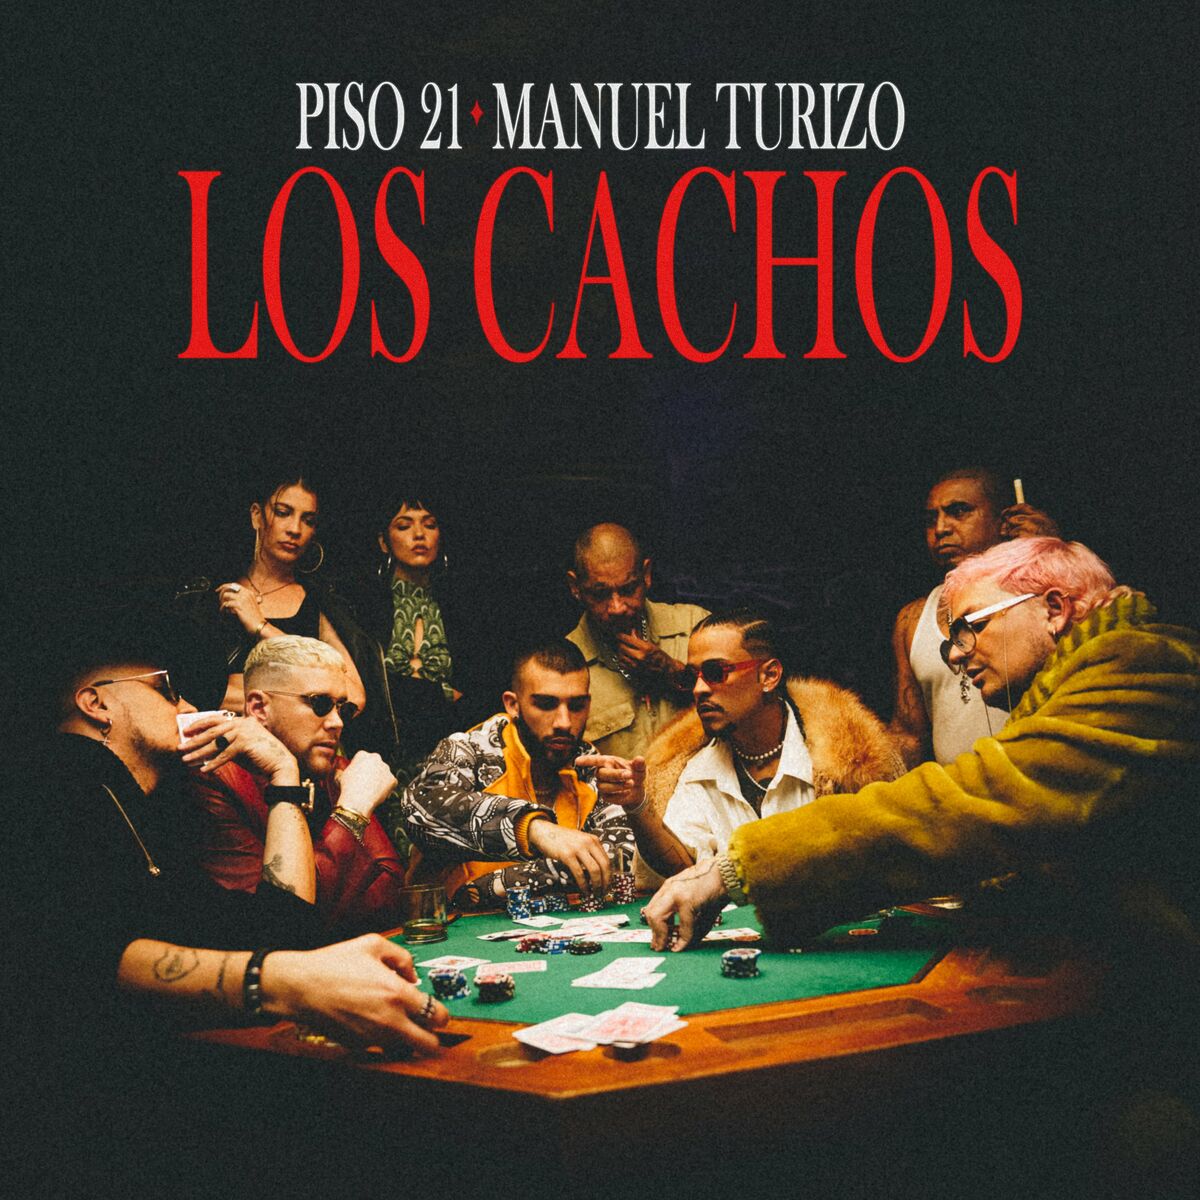 Piso 21 Feat. Manuel Turizo - Los Cachos.mp3